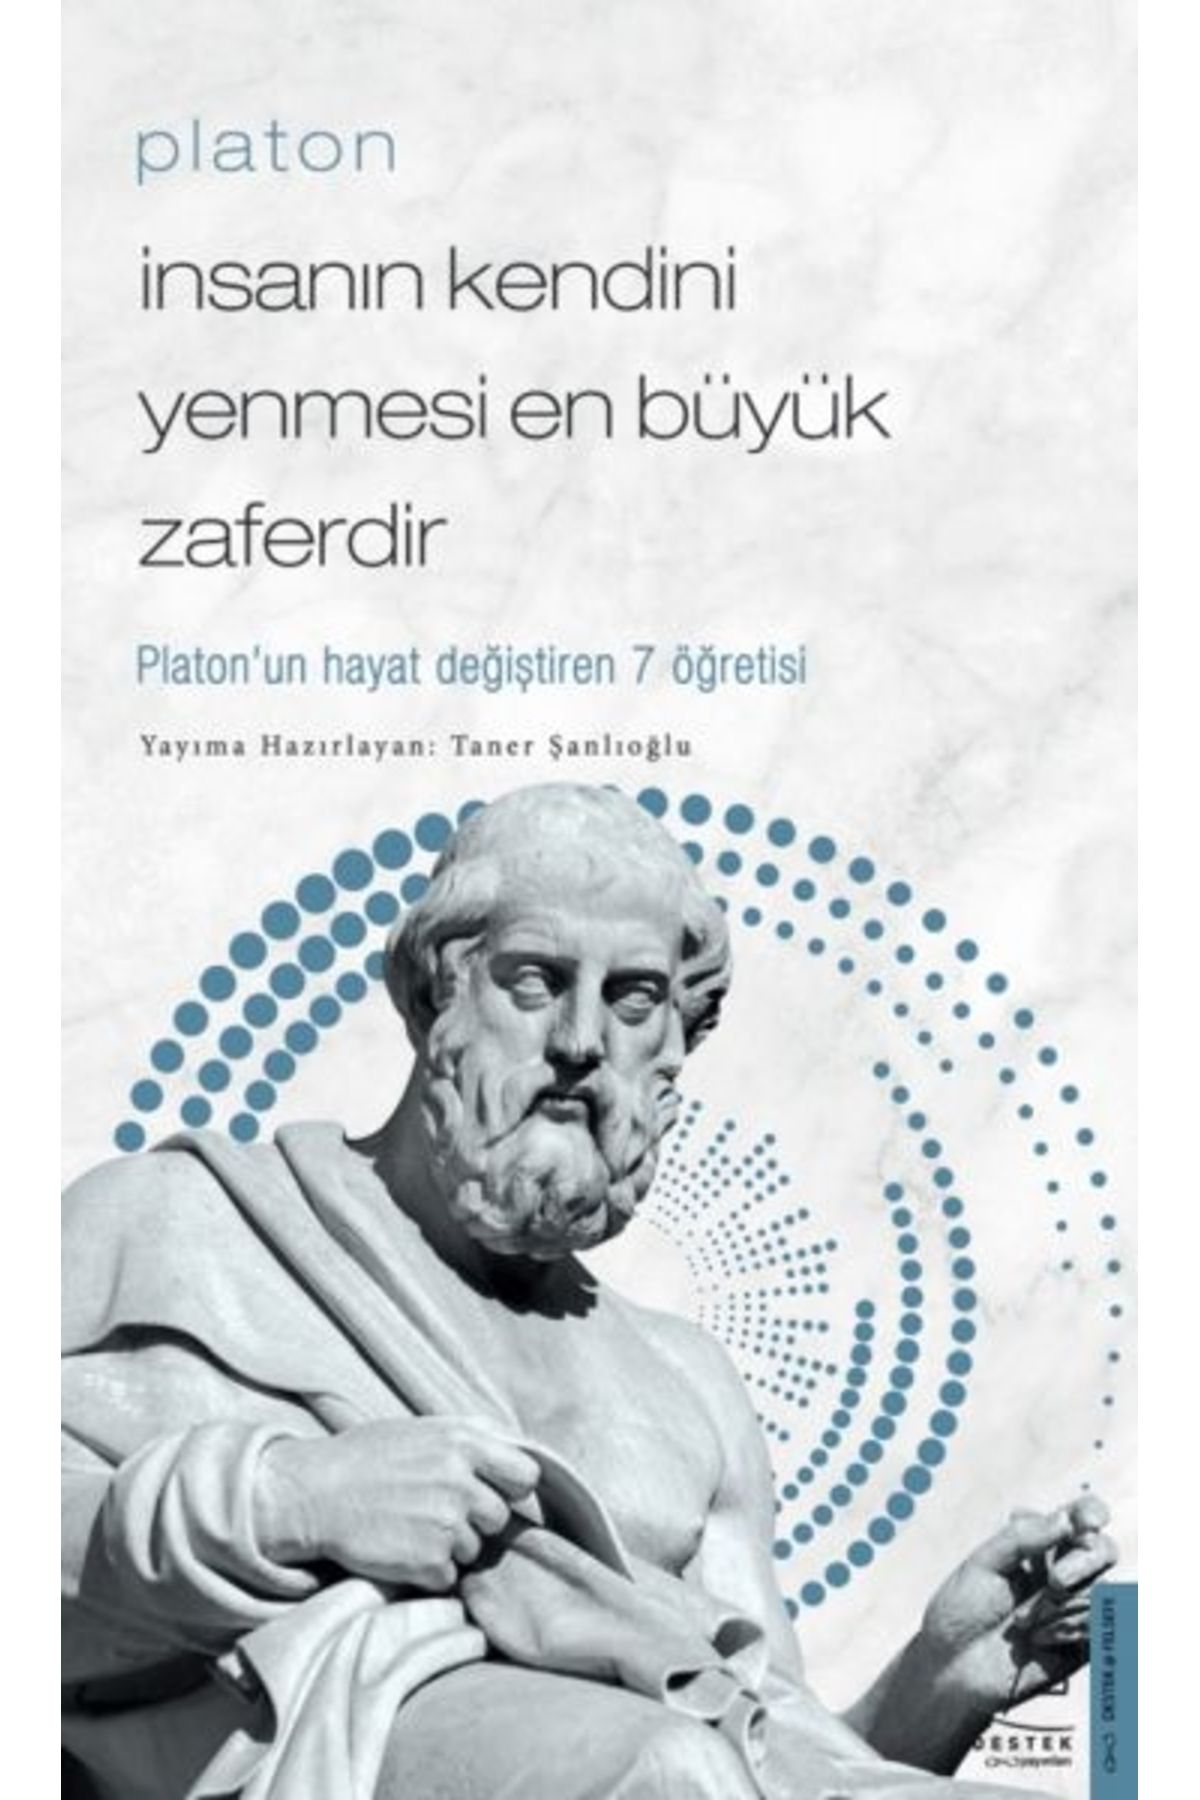 Destek Yayınları Platon - İnsanın Kendini Yenmesi En Büyük Zaferdir - Platon’un Hayat Değiştiren 7 Öğretis